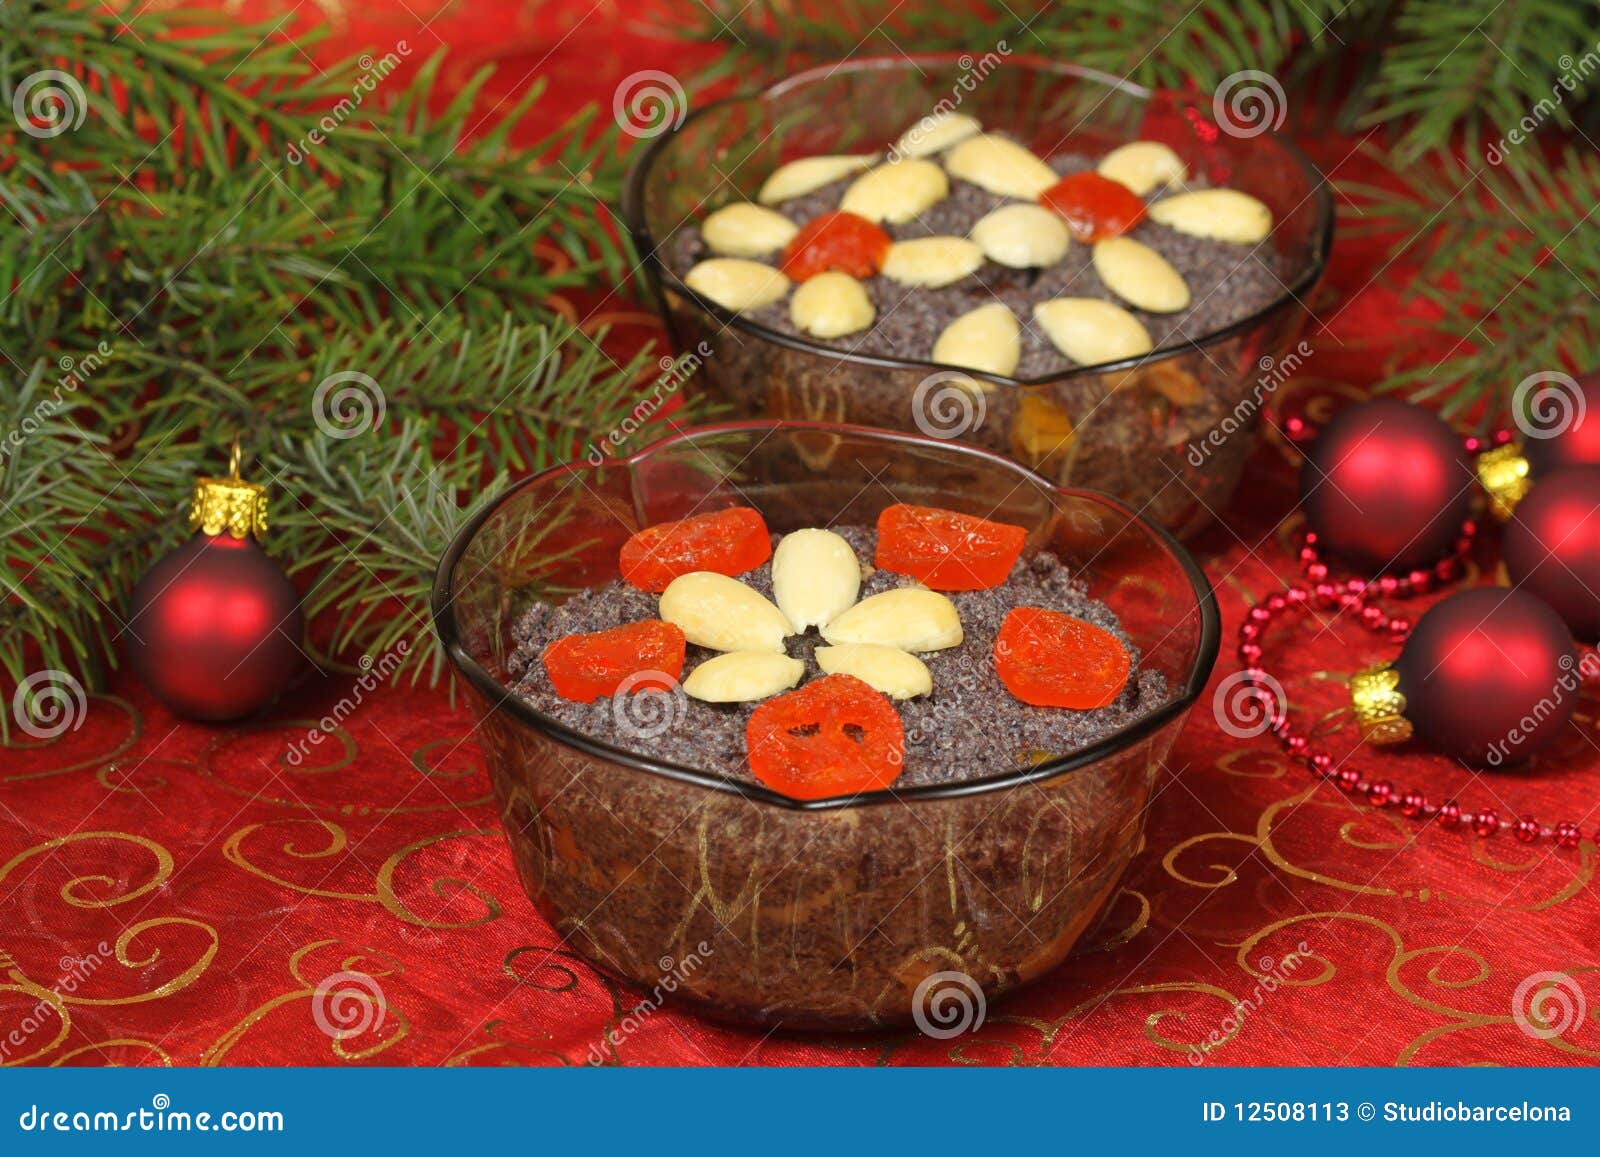 Polish Christmas dessert stock image. Image of makowki ...